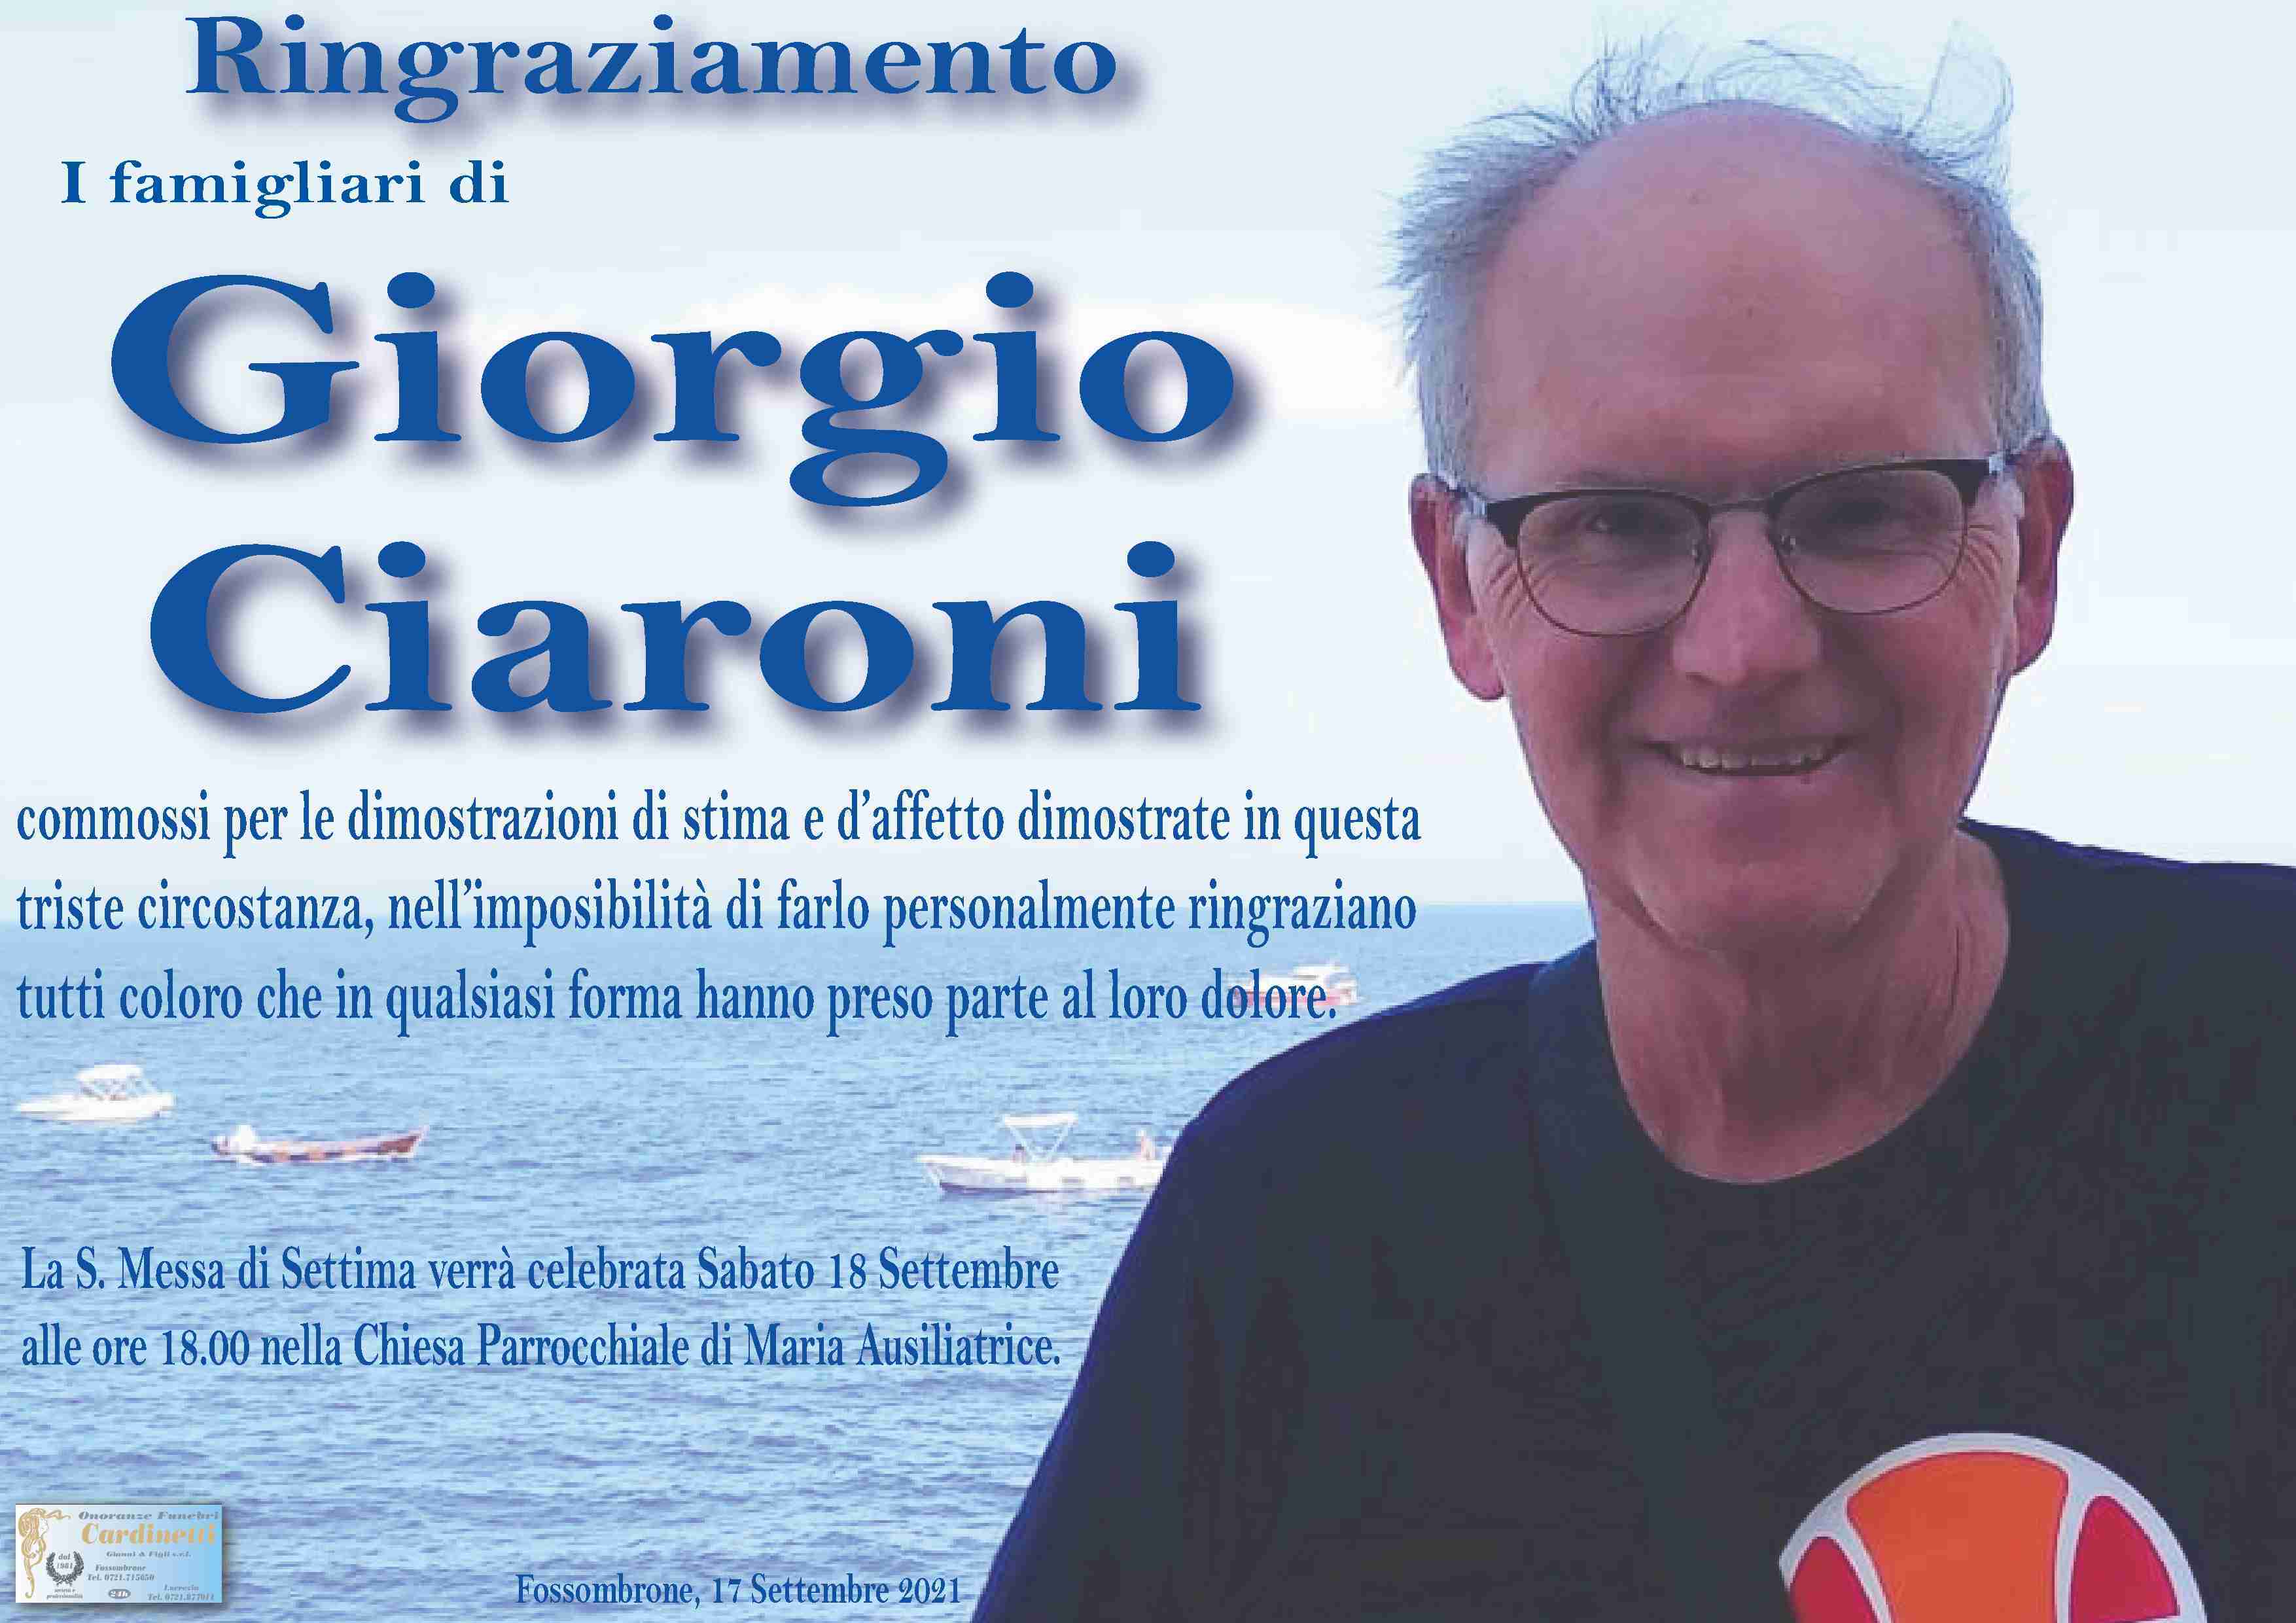 Giorgio Ciaroni